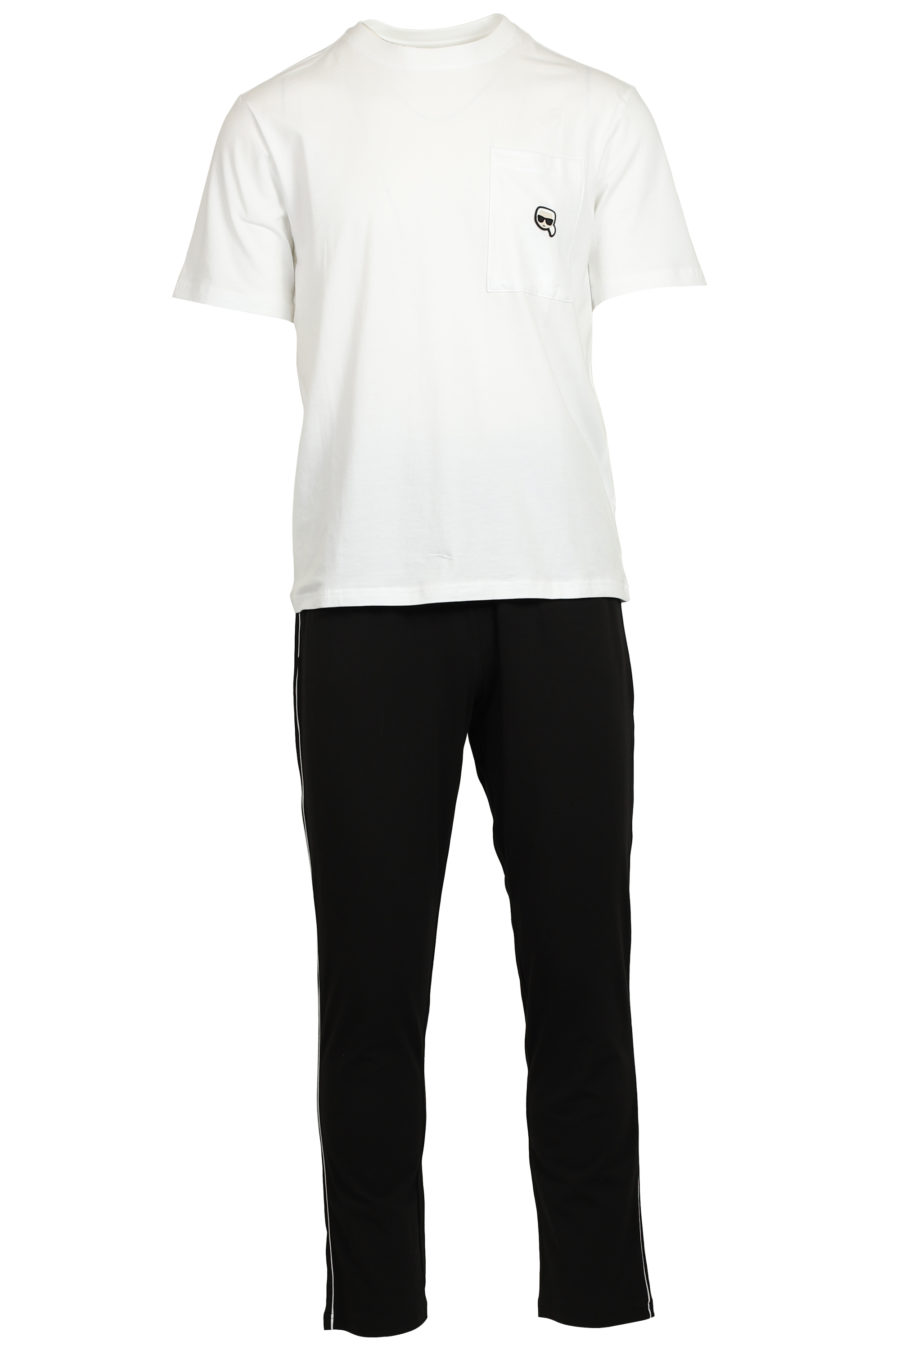 Set de pijama negro y blanco con logo en goma - IMG 3737